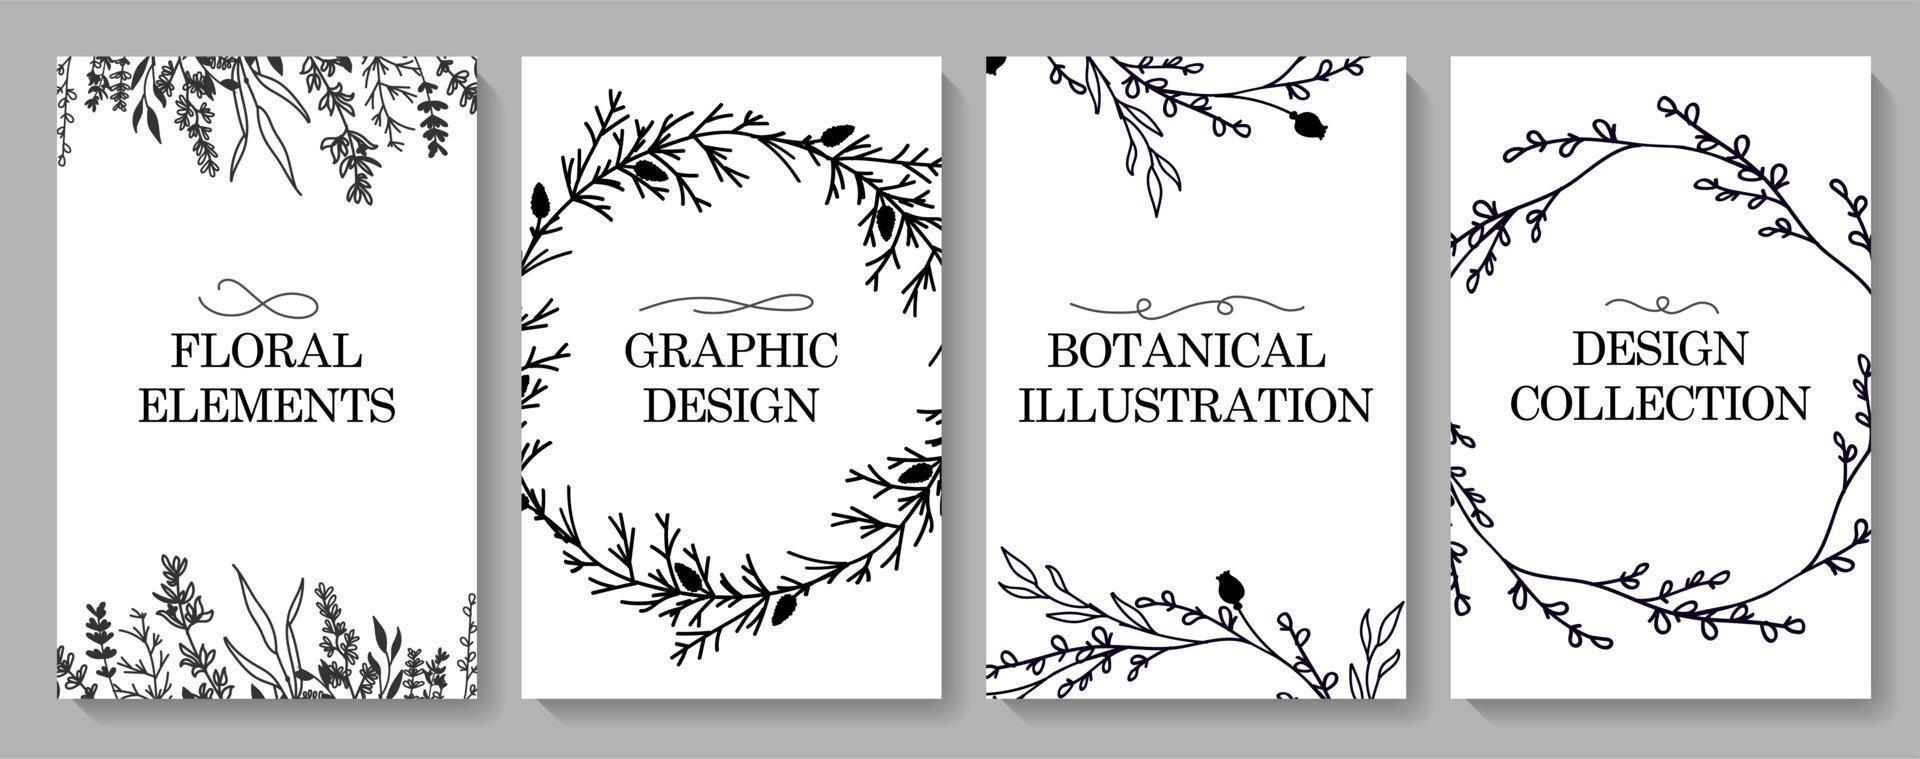 minimalistisches design der hochzeitseinladungskartenvorlage, floraler blumendruck im stil einer schwarzen linie. Postkarten, Vorlagen, festliche Dekoration. Vektor-Illustration. vektor